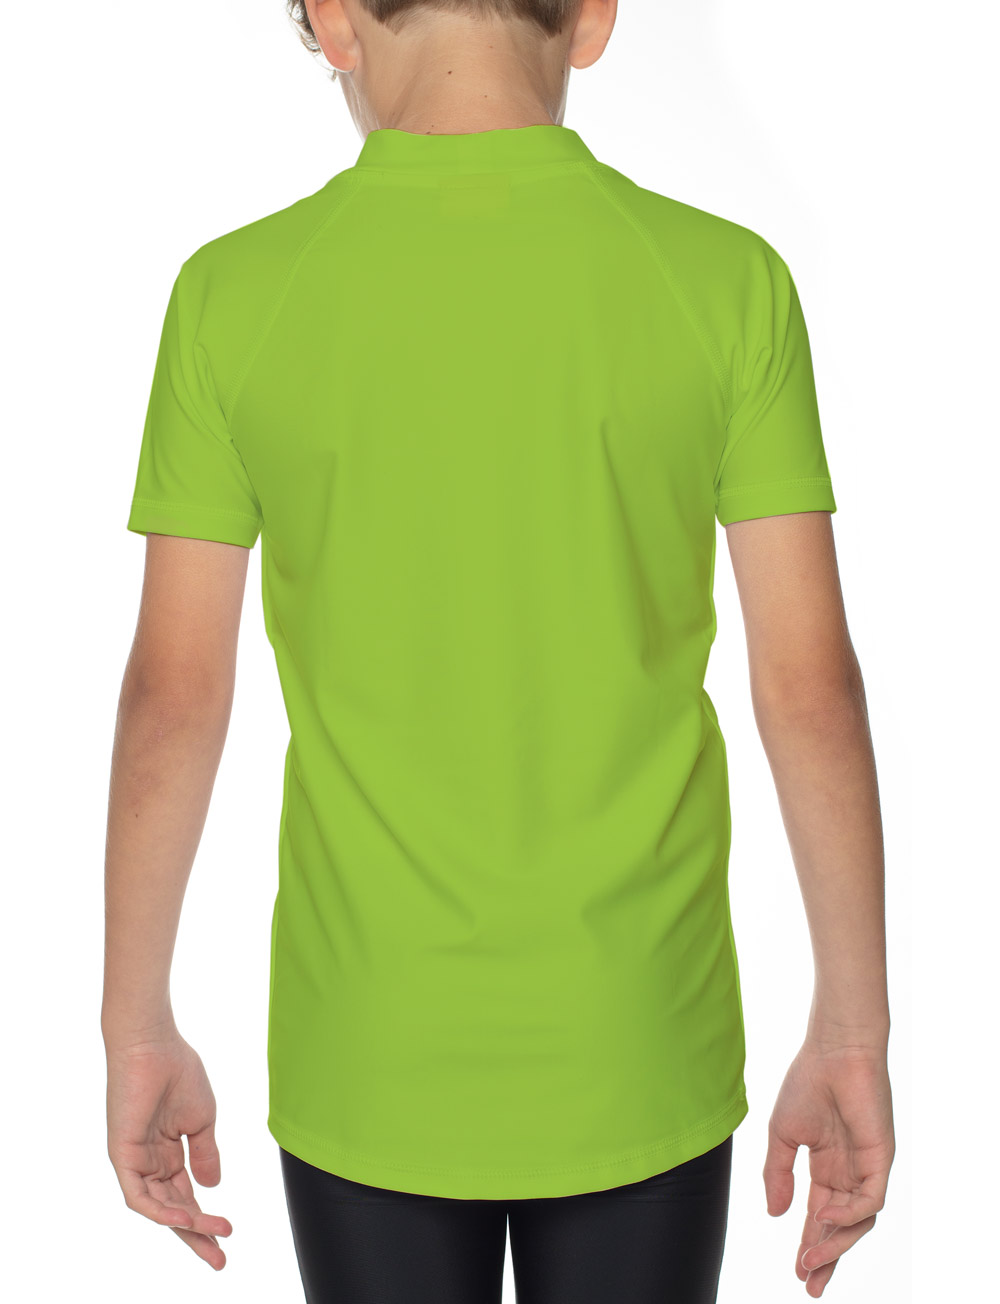 UV Sonnenschutz T-Shirt elastisch UPF 50+ und TüV geprüft Kinder neon grün Piraten